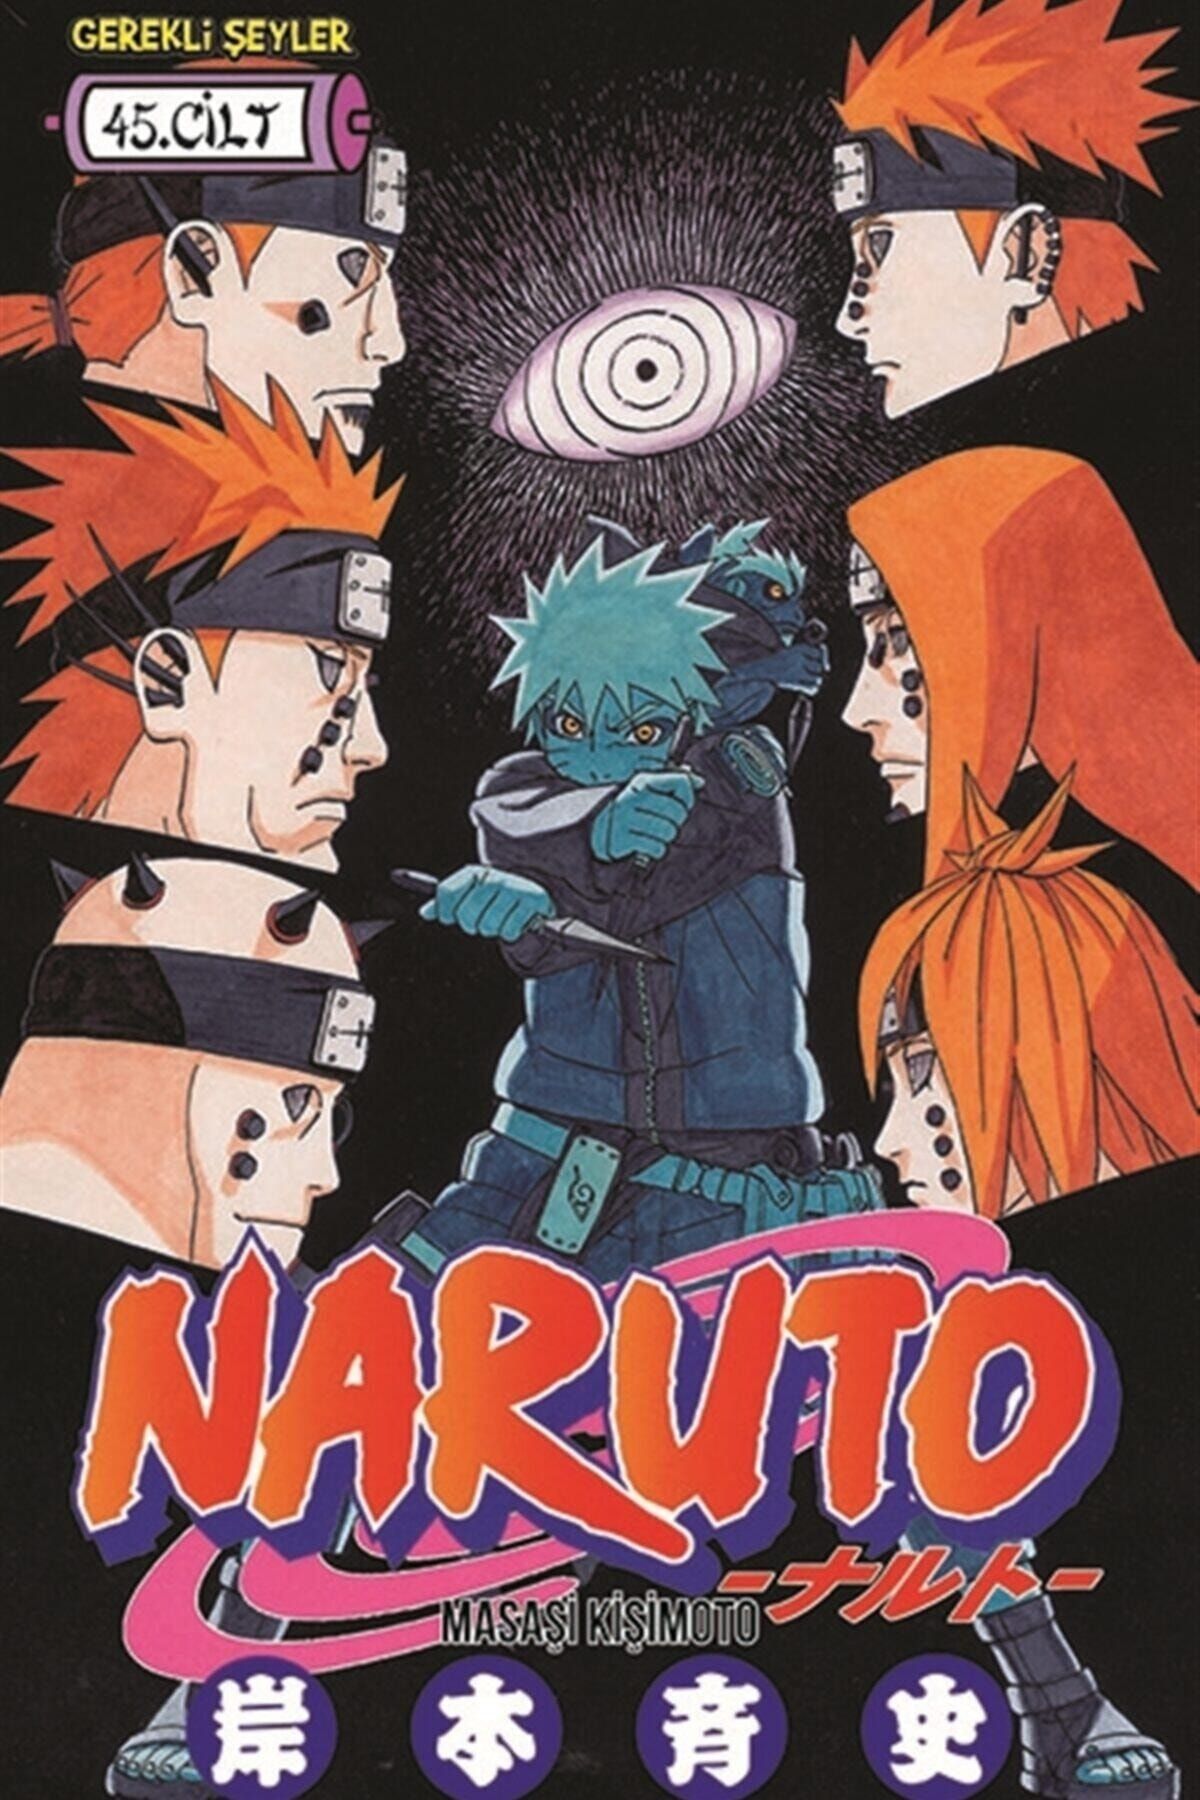 Gerekli Şeyler Yayıncılık Naruto 45.cilt - Masaşi Kişimoto 9789757938705